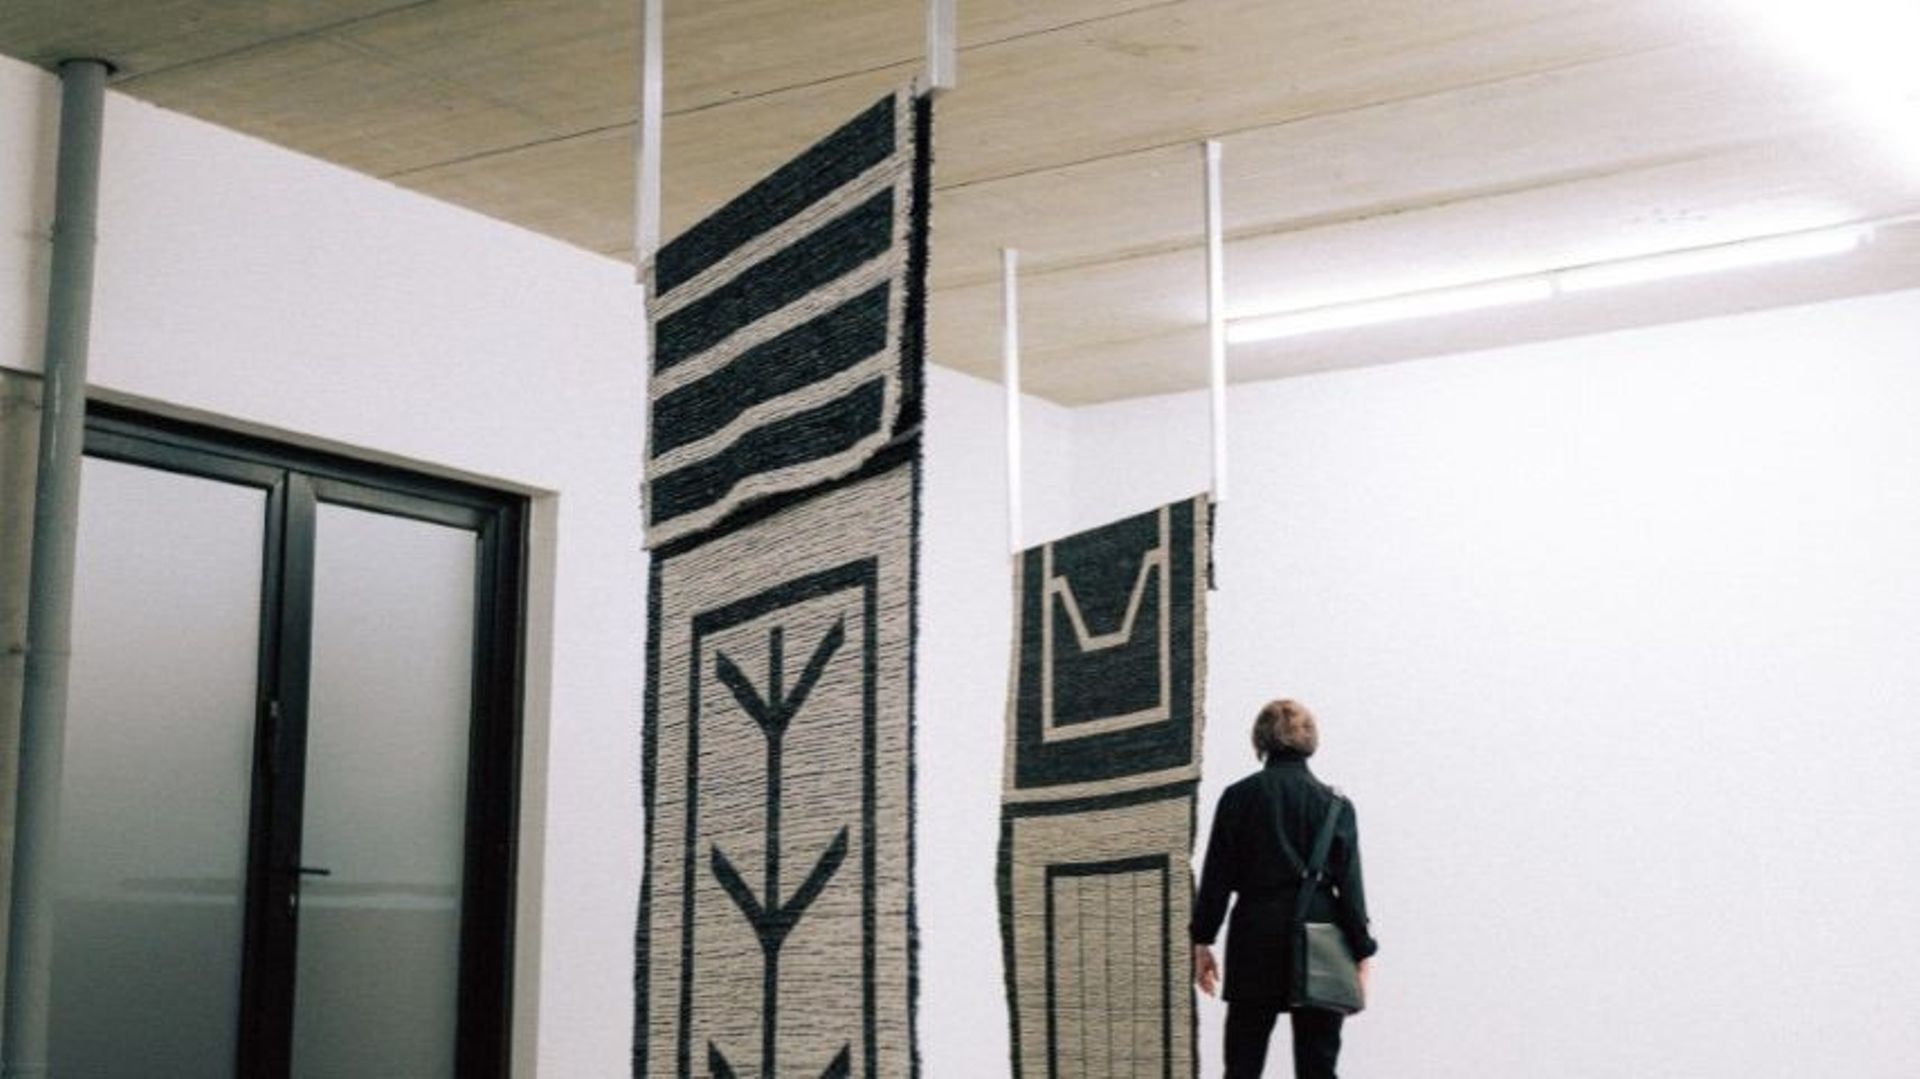 Deux nouvelles exposition au sein du musée d’art contemporain IKOB, en province de Liège